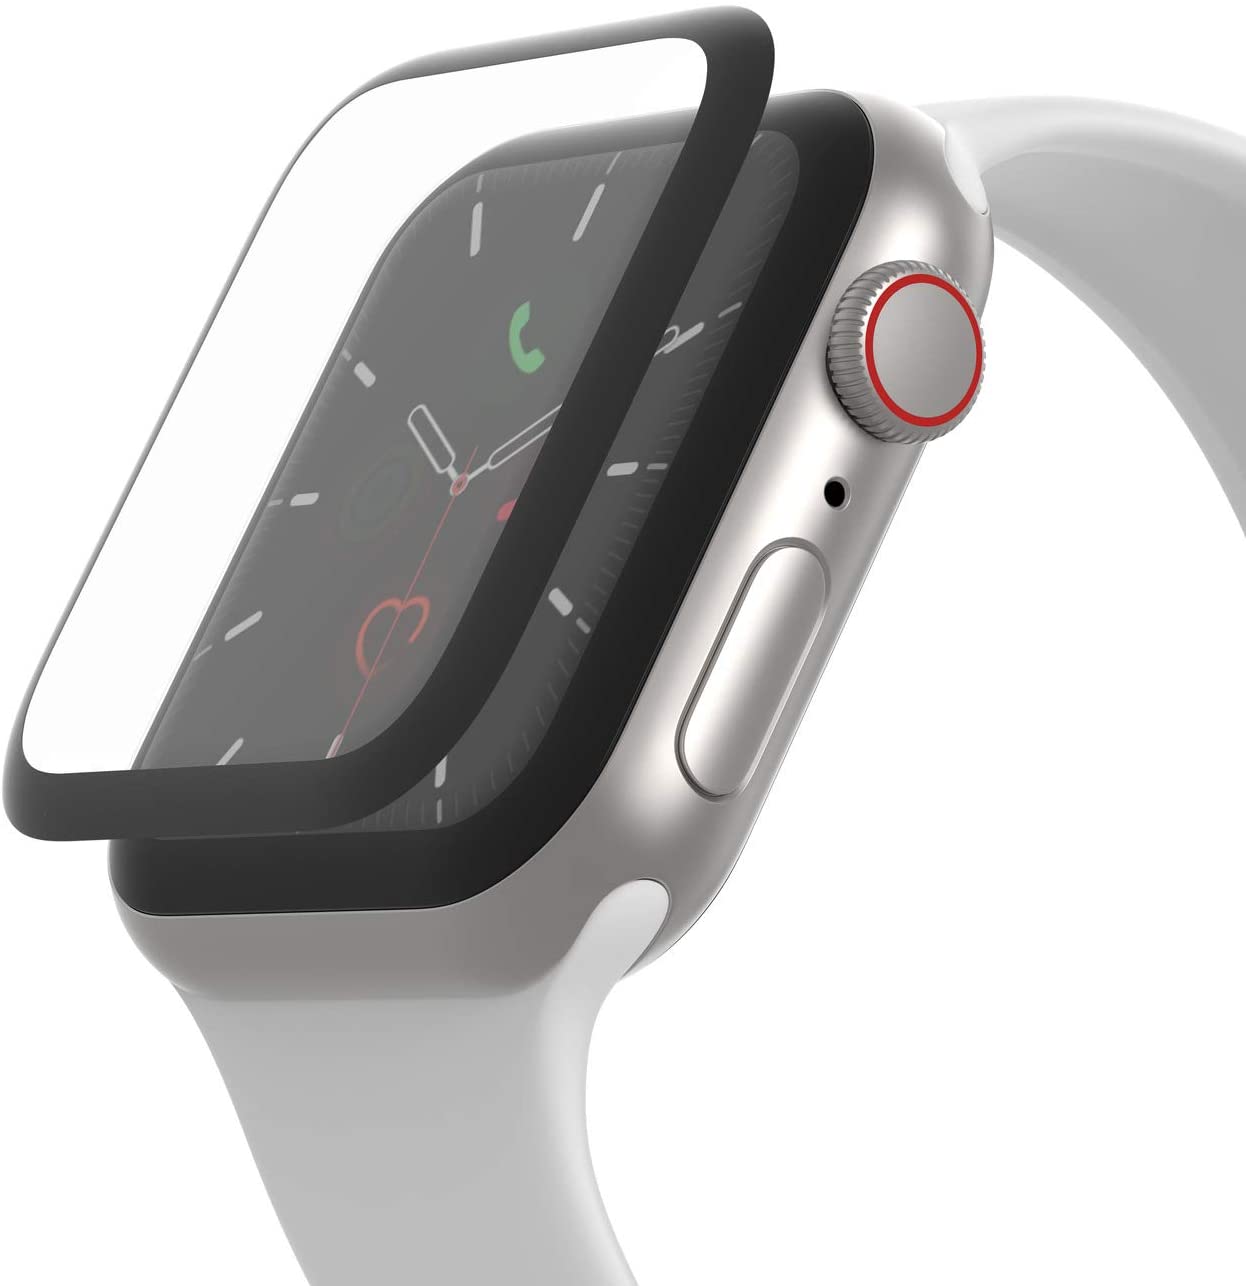 ベルキン、｢Apple Watch Series 4/5｣向け画面保護フィルムを3月20日に発売へ